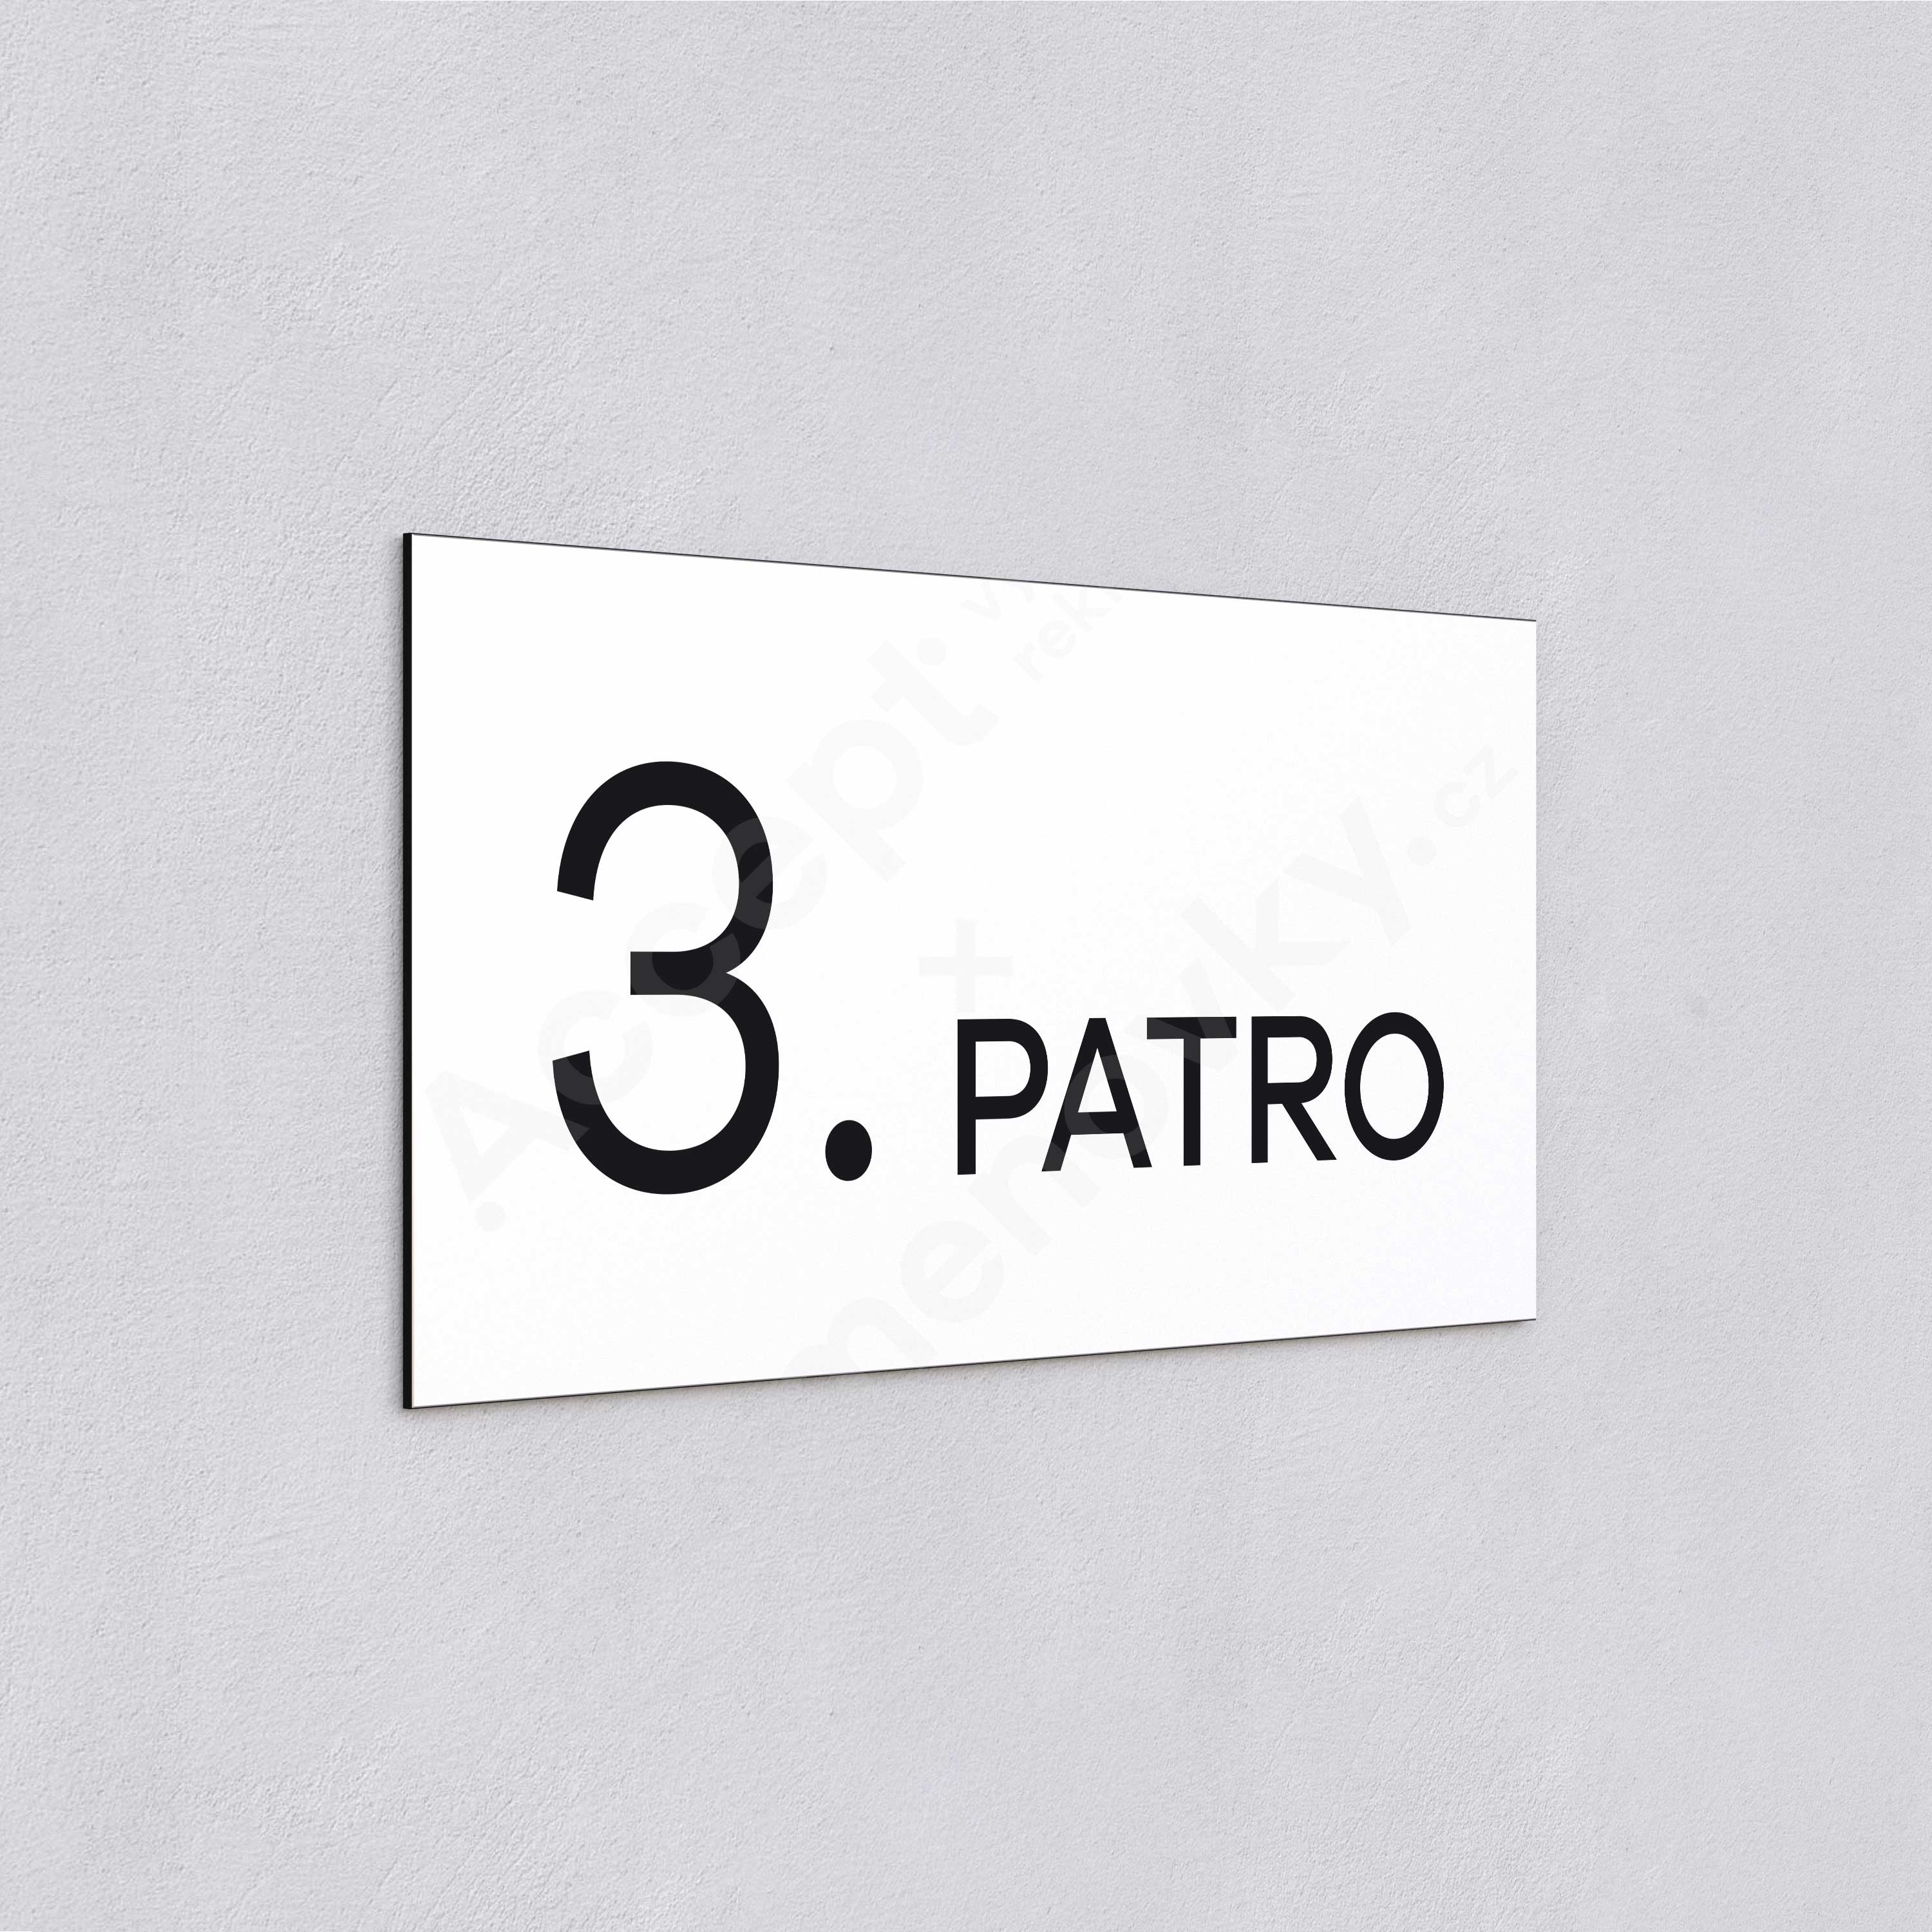 Označení podlaží "3. PATRO" - bílá tabulka - černý popis